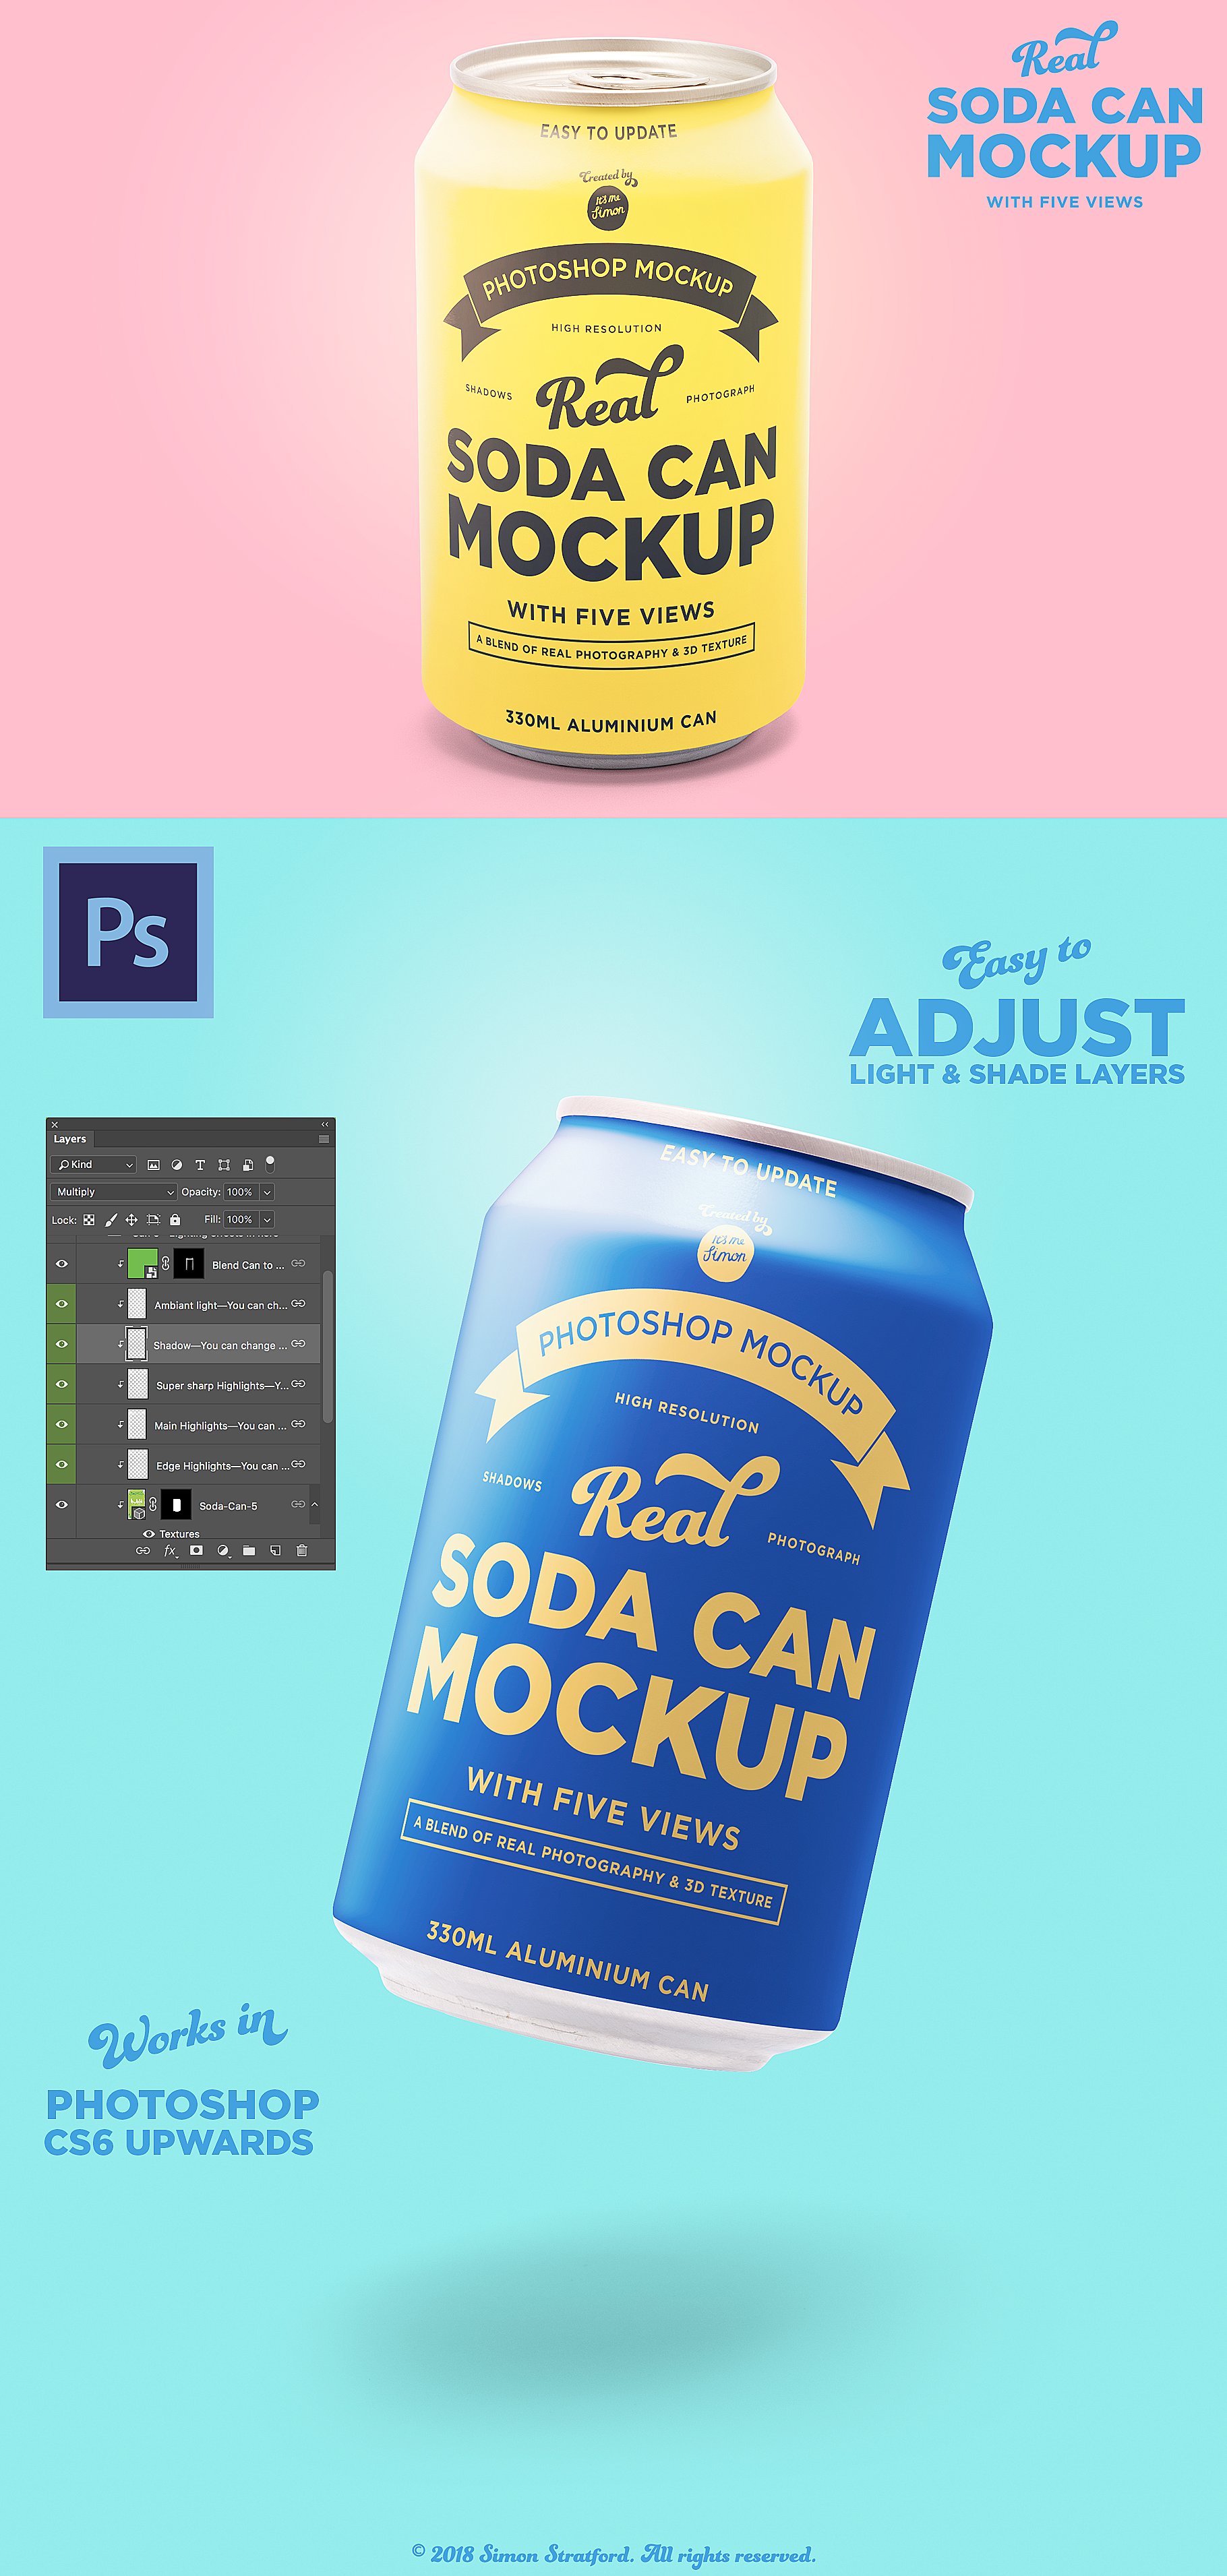 苏打水饮料易拉罐外观设计样机 Real soda can mockup for photoshop插图(1)